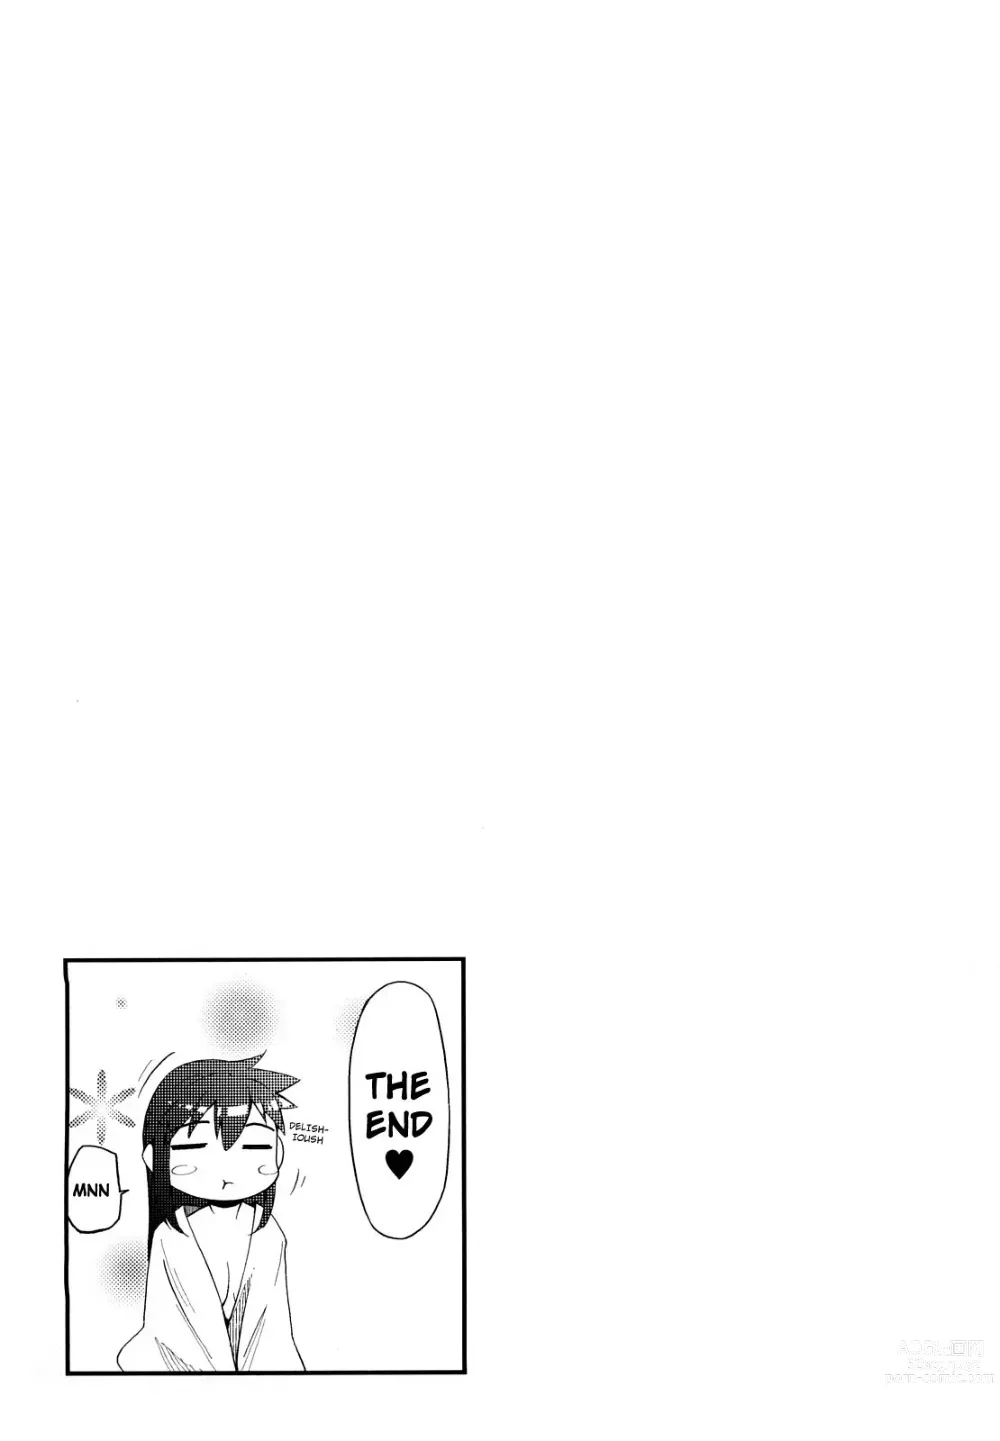 Page 193 of manga Клубничный дилдо после школы